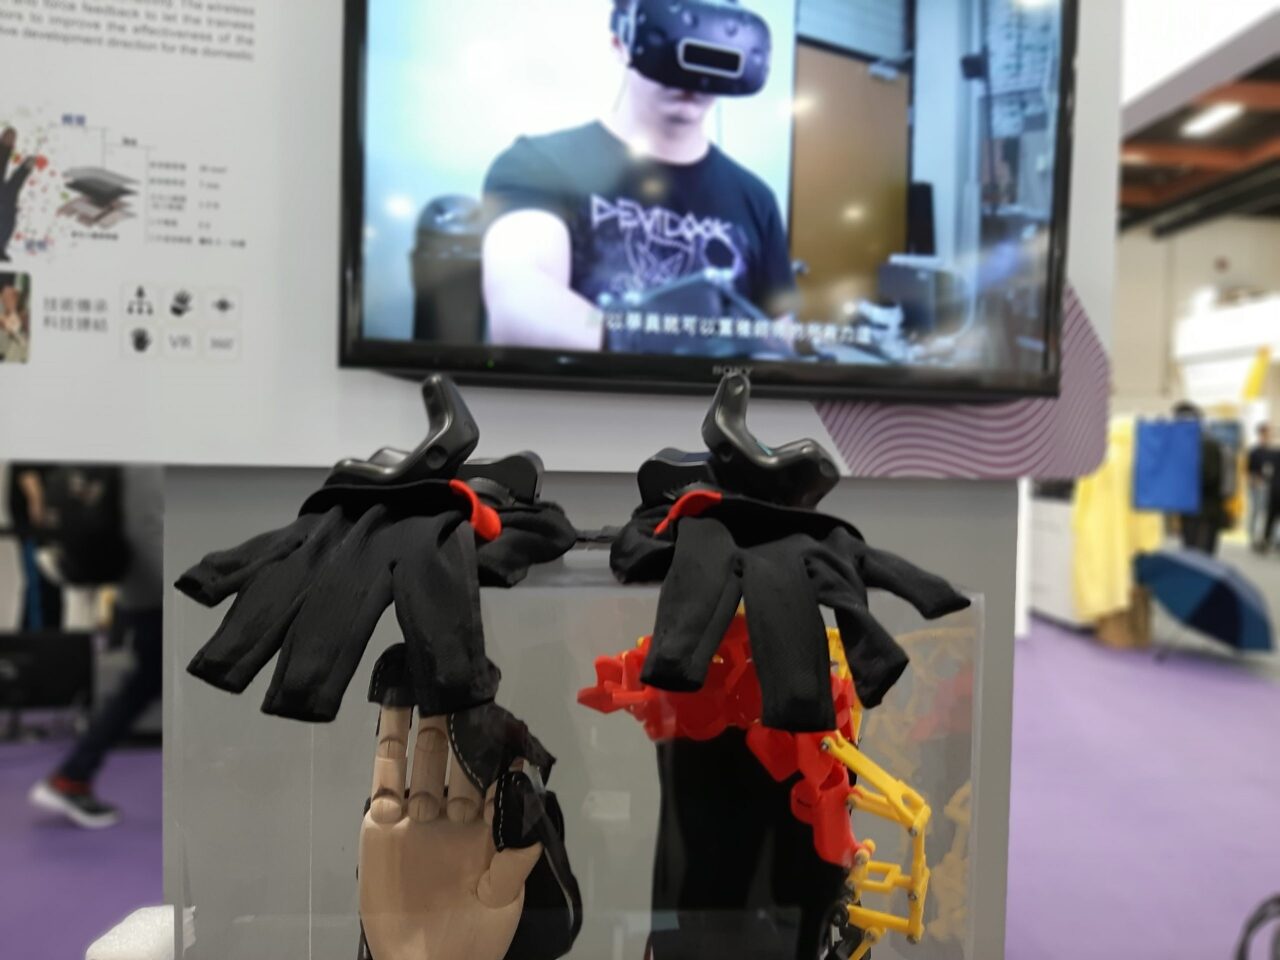 Des gants de réalité virtuelle (photo RTI)